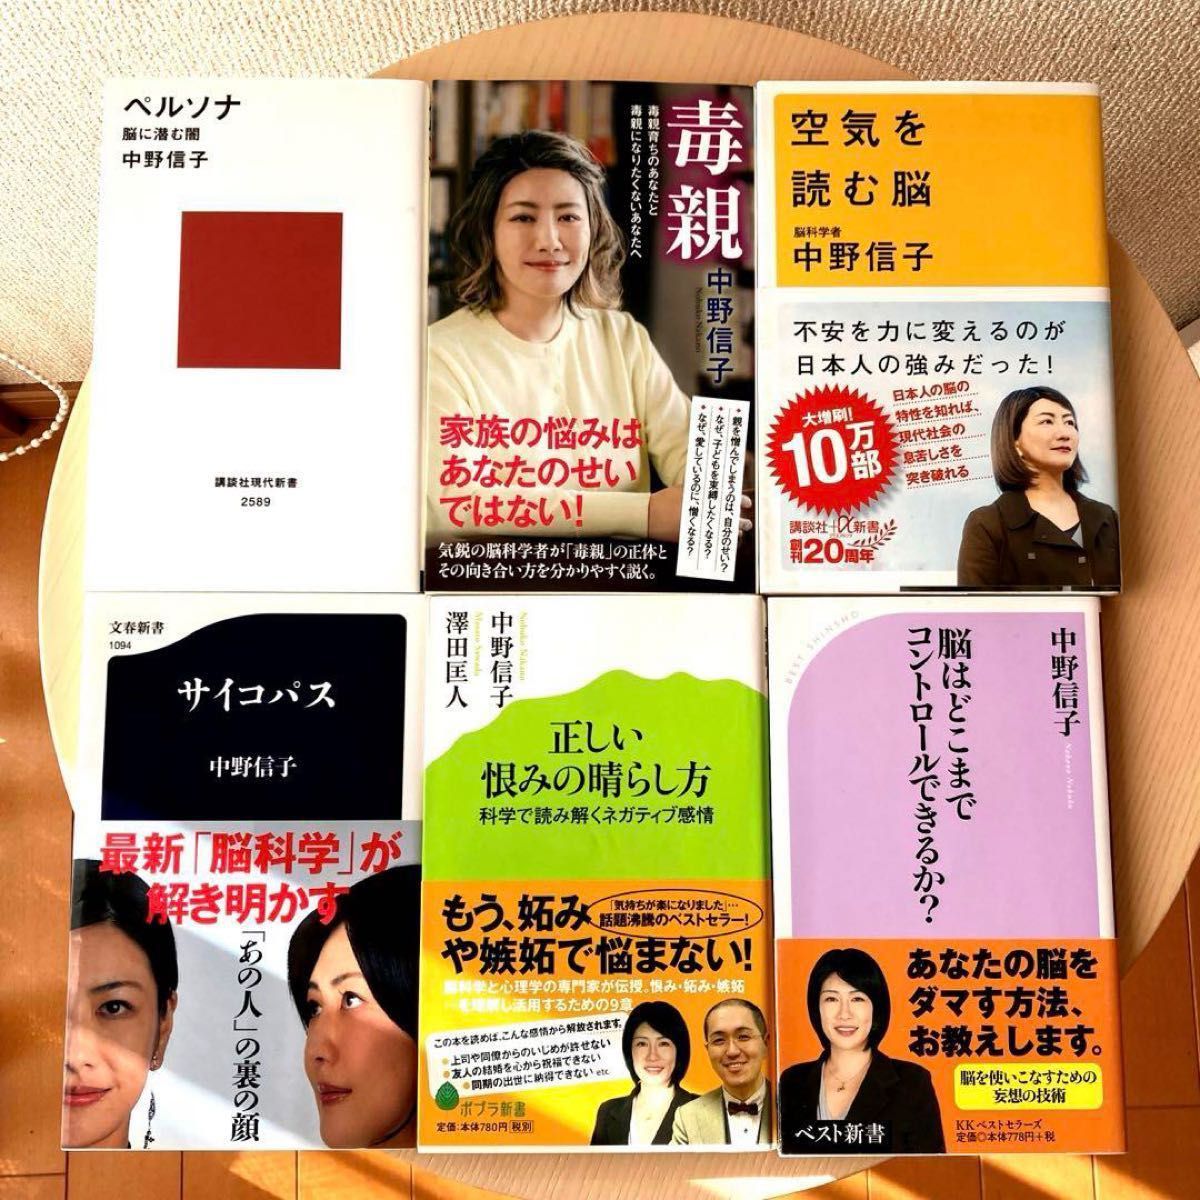 中野信子新書6冊「ペルソナ」「毒親 」「空気を読む脳」「サイコパス」「正しい恨みの晴らし方」「脳はどこまでコントロールできるか?」